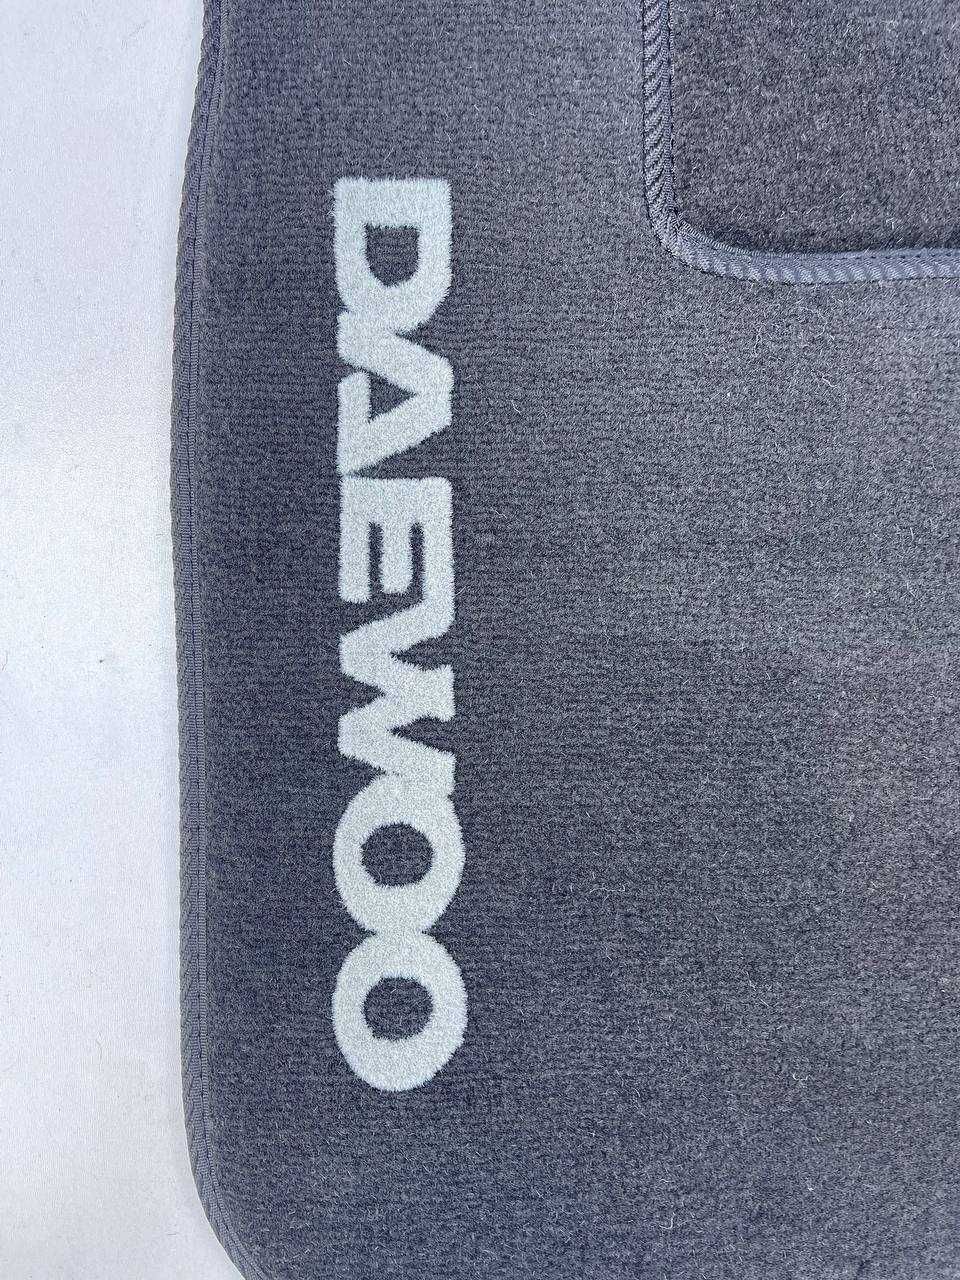 Ворсові коврики Daewoo Lanos нові з високим ворсом передні